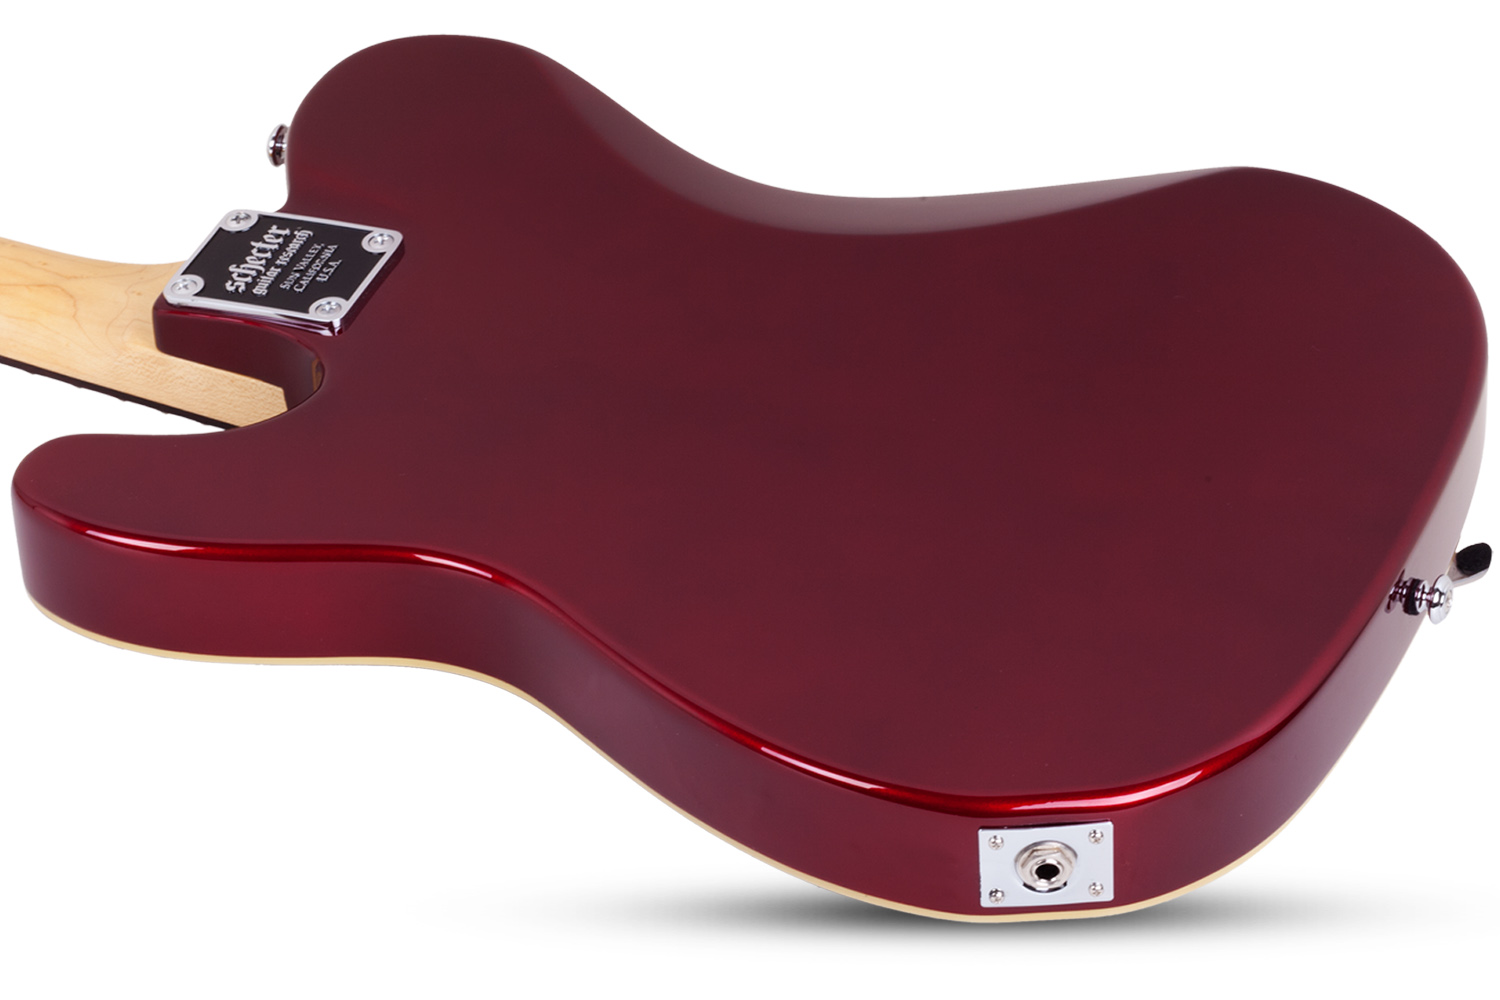 Schecter Pt Fastback Ii B Bigsby 2h Trem Bigsby Rw - Metallic Red - Televorm elektrische gitaar - Variation 3